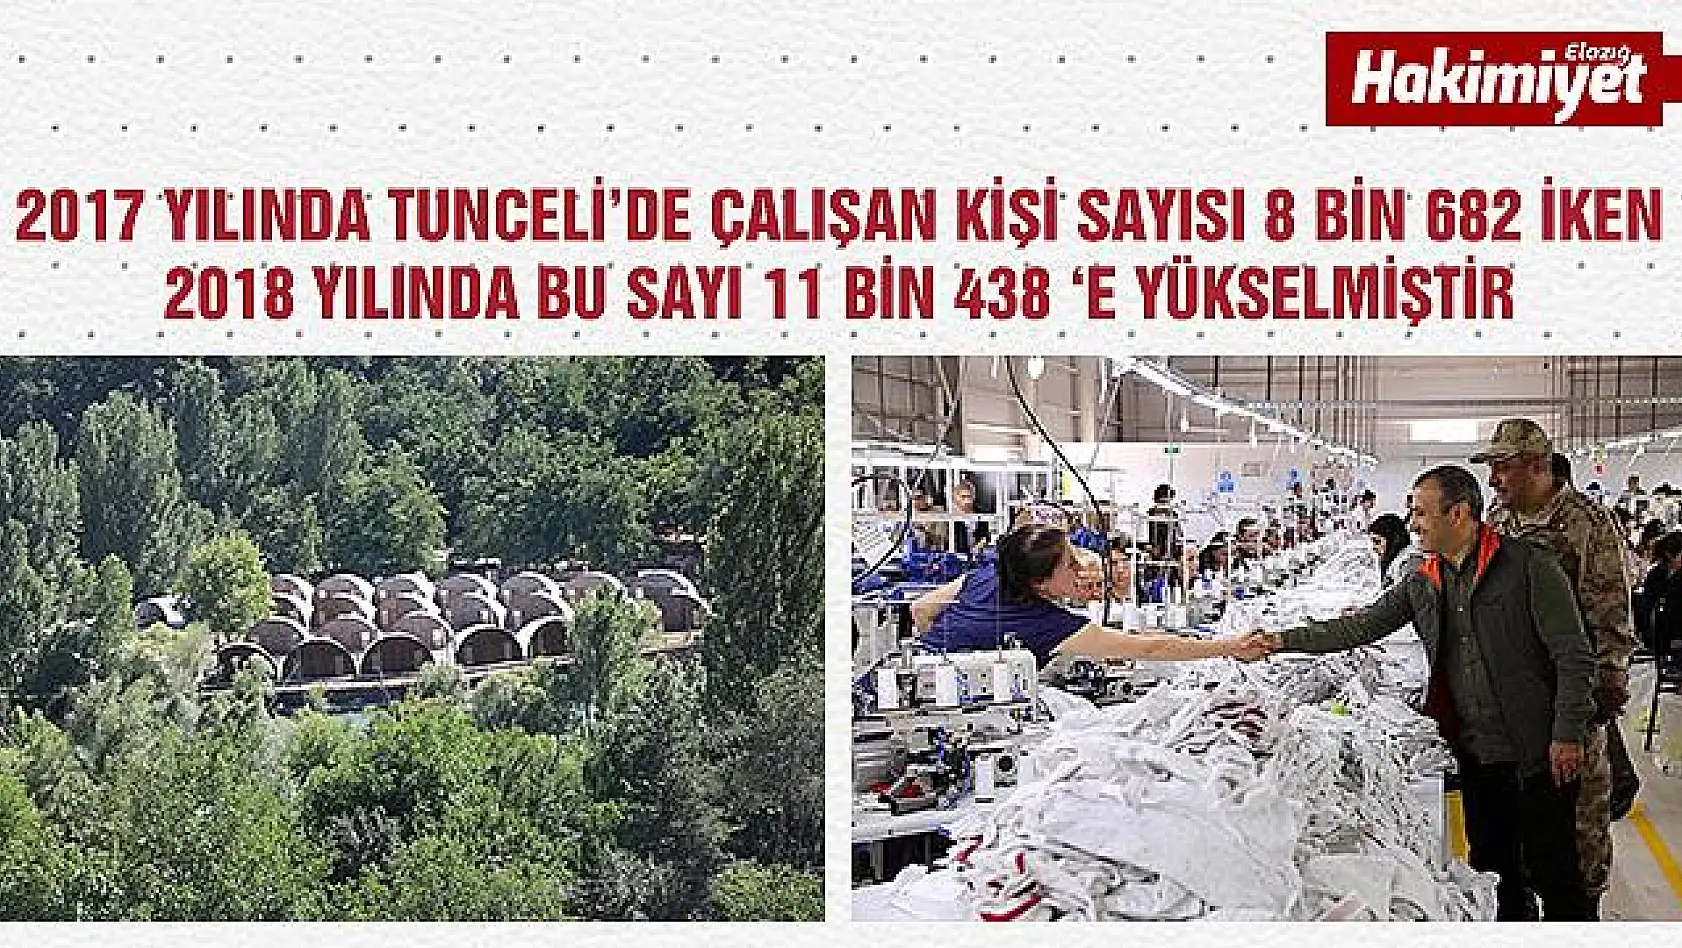 Tunceli'yi Bu Yıl 128 Bin Turist Ziyaret Etti